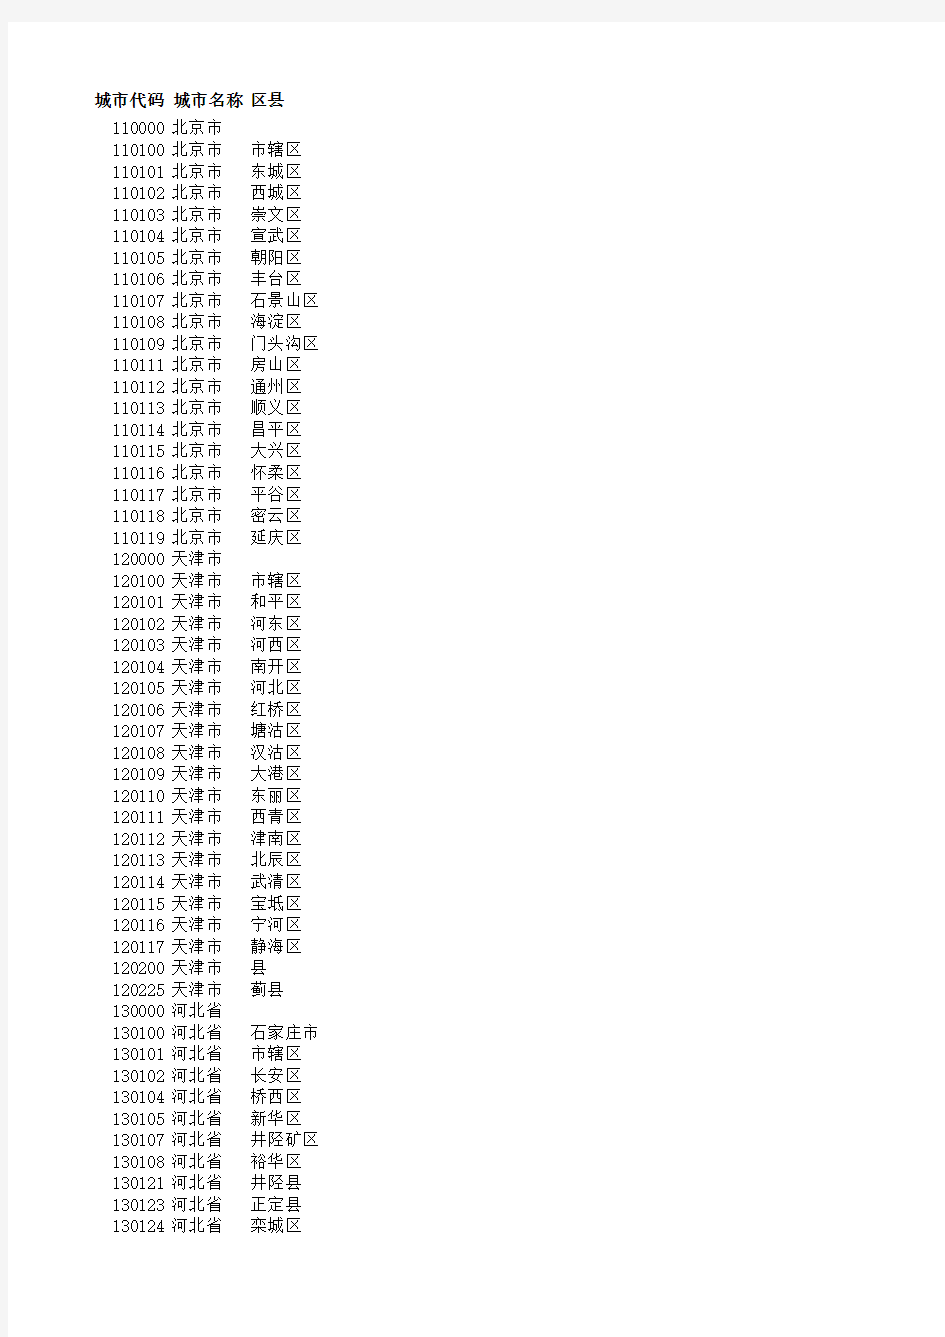 中国城市代码表(2016年版)